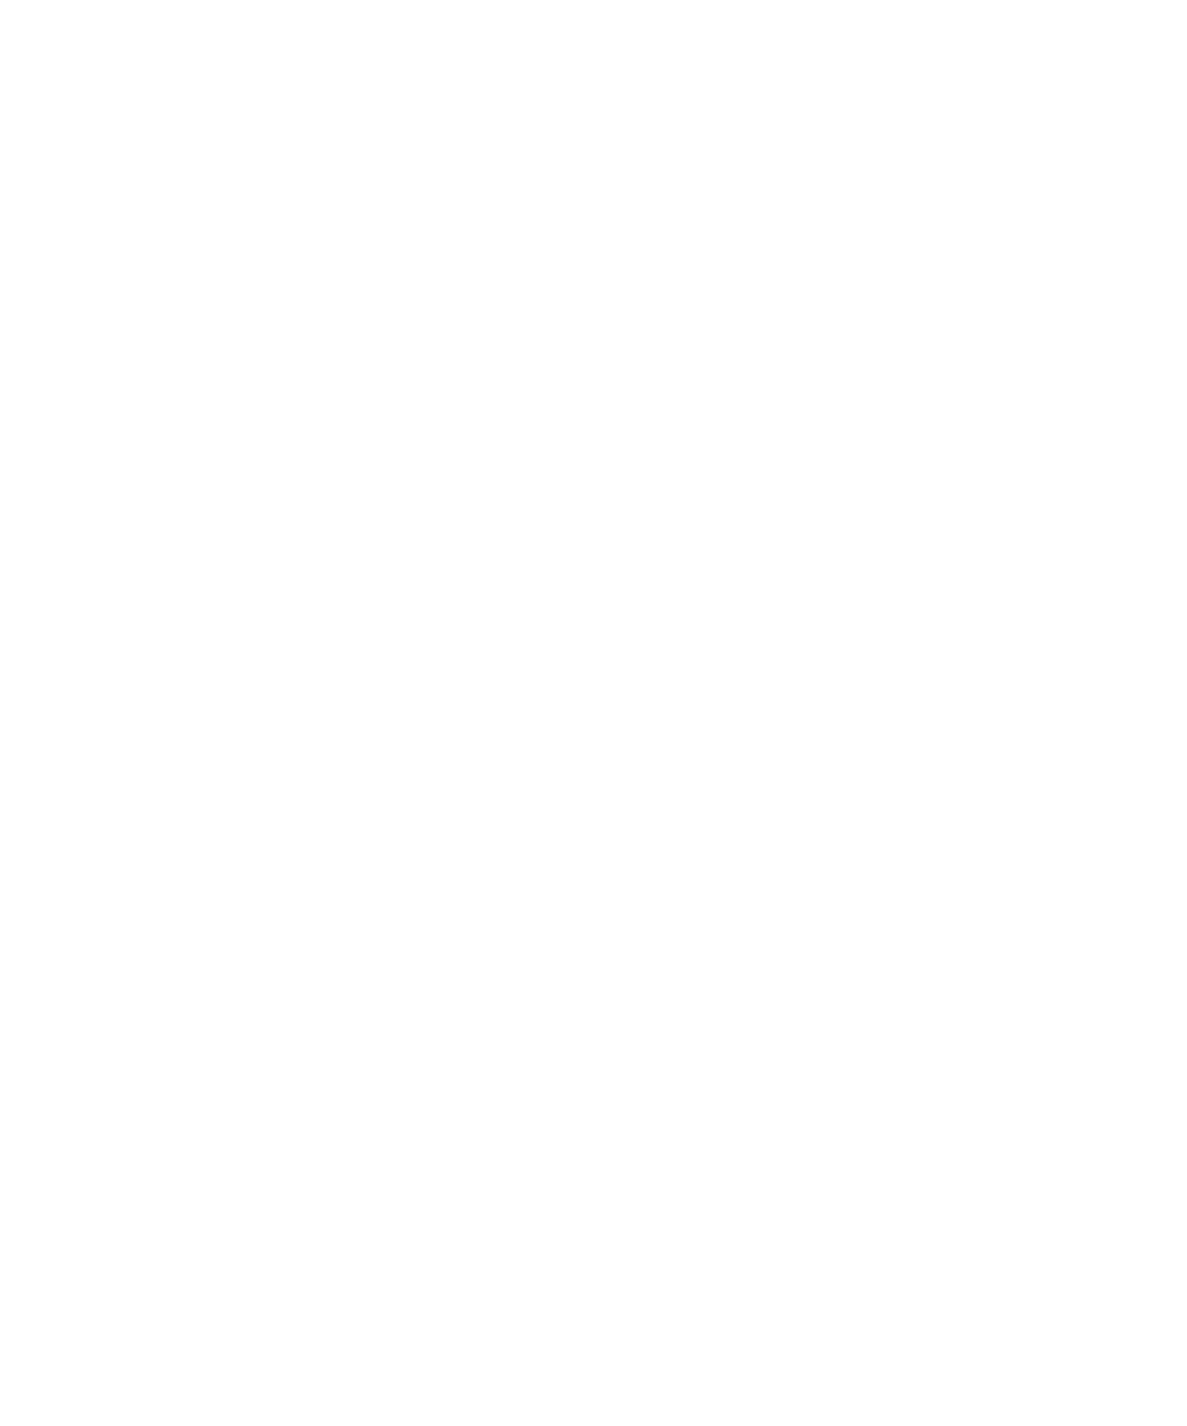 Cleanaway Waste Management logo for dark backgrounds (transparent PNG)